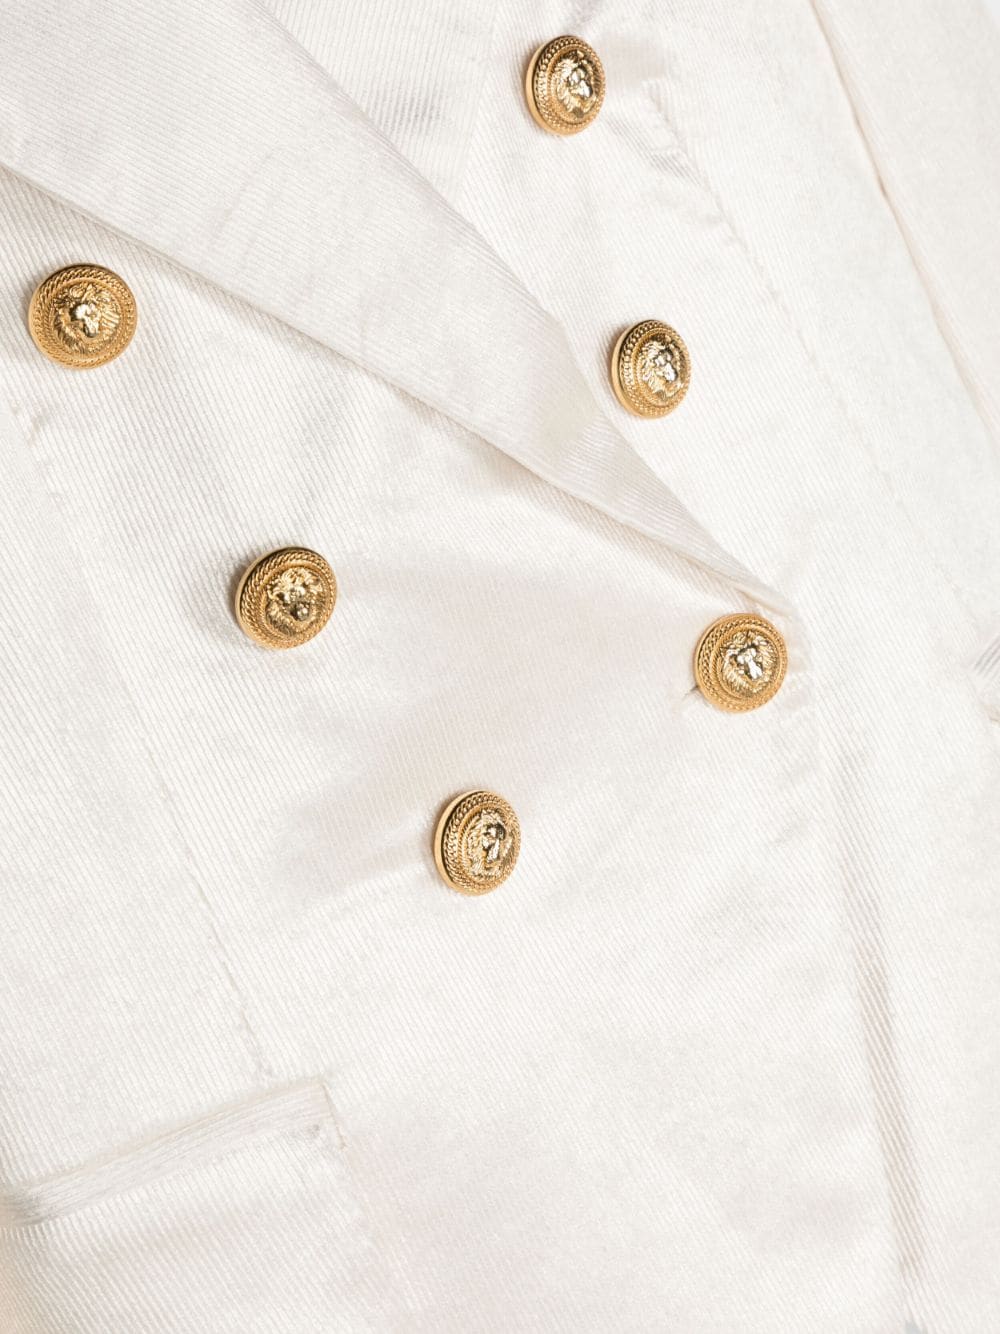 Veste croisée blanche pour fille avec boutons dorés